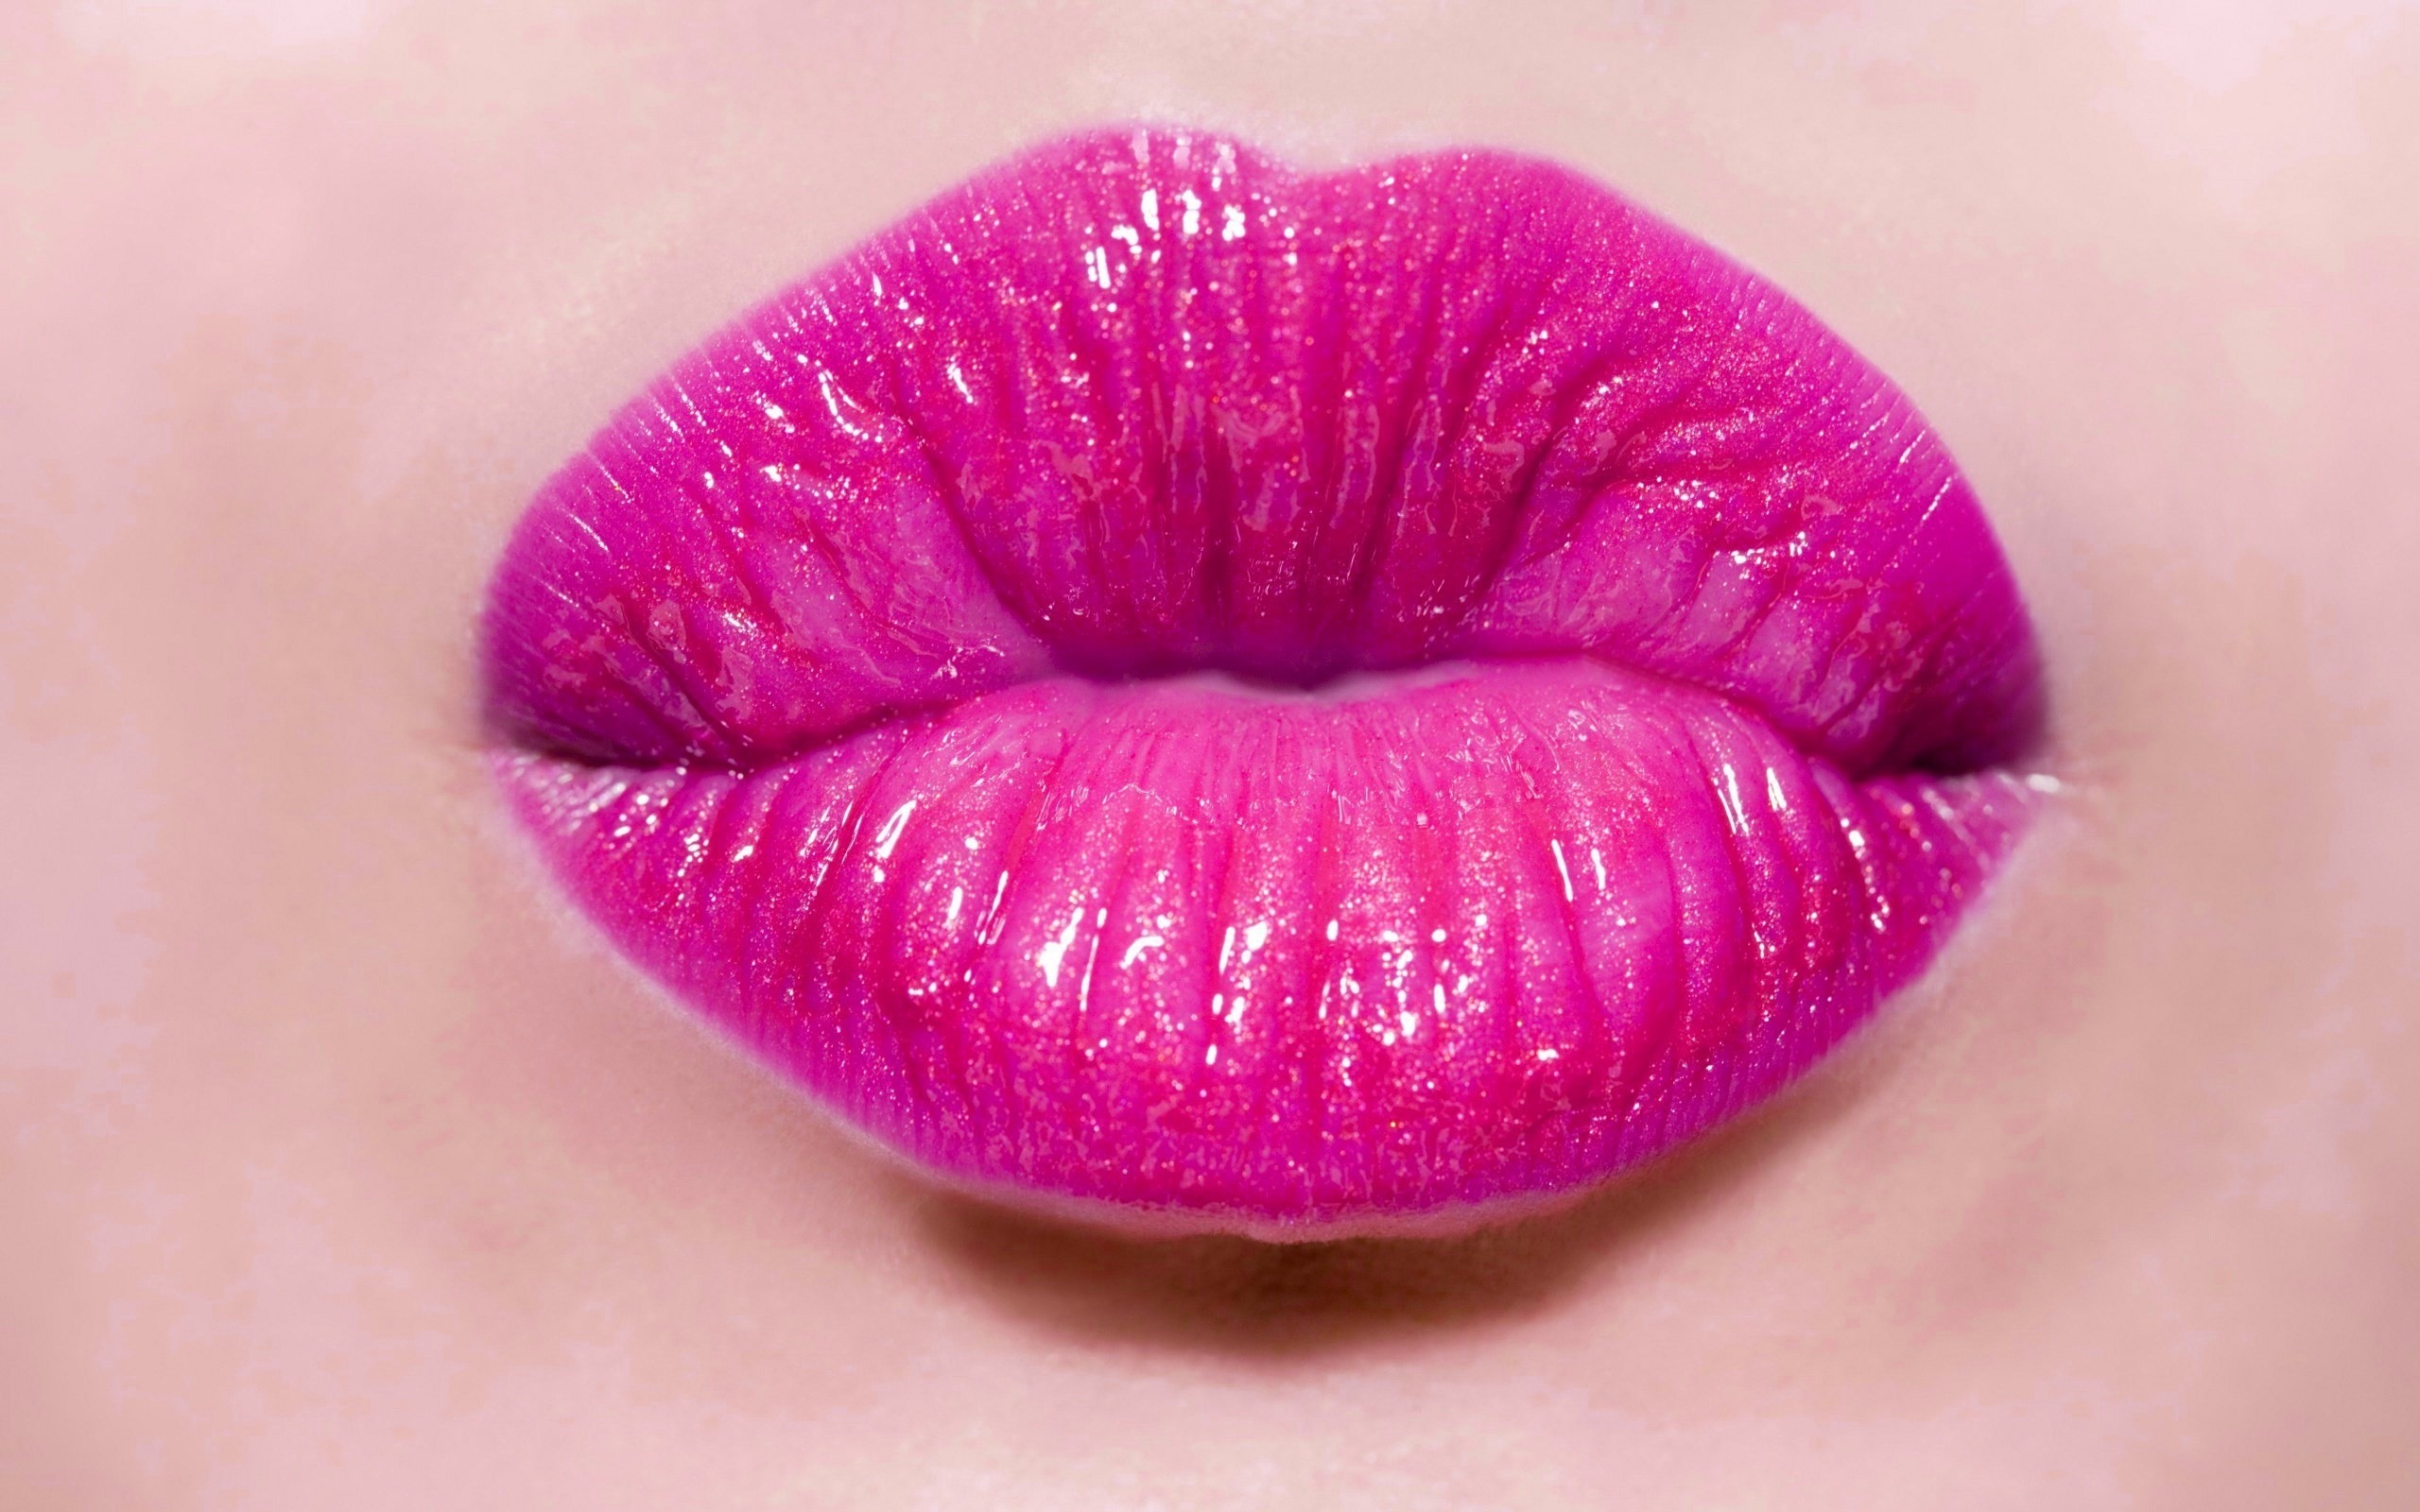 2560x1600 Pretty pink lips image, 554 kB - Woodward Murphy